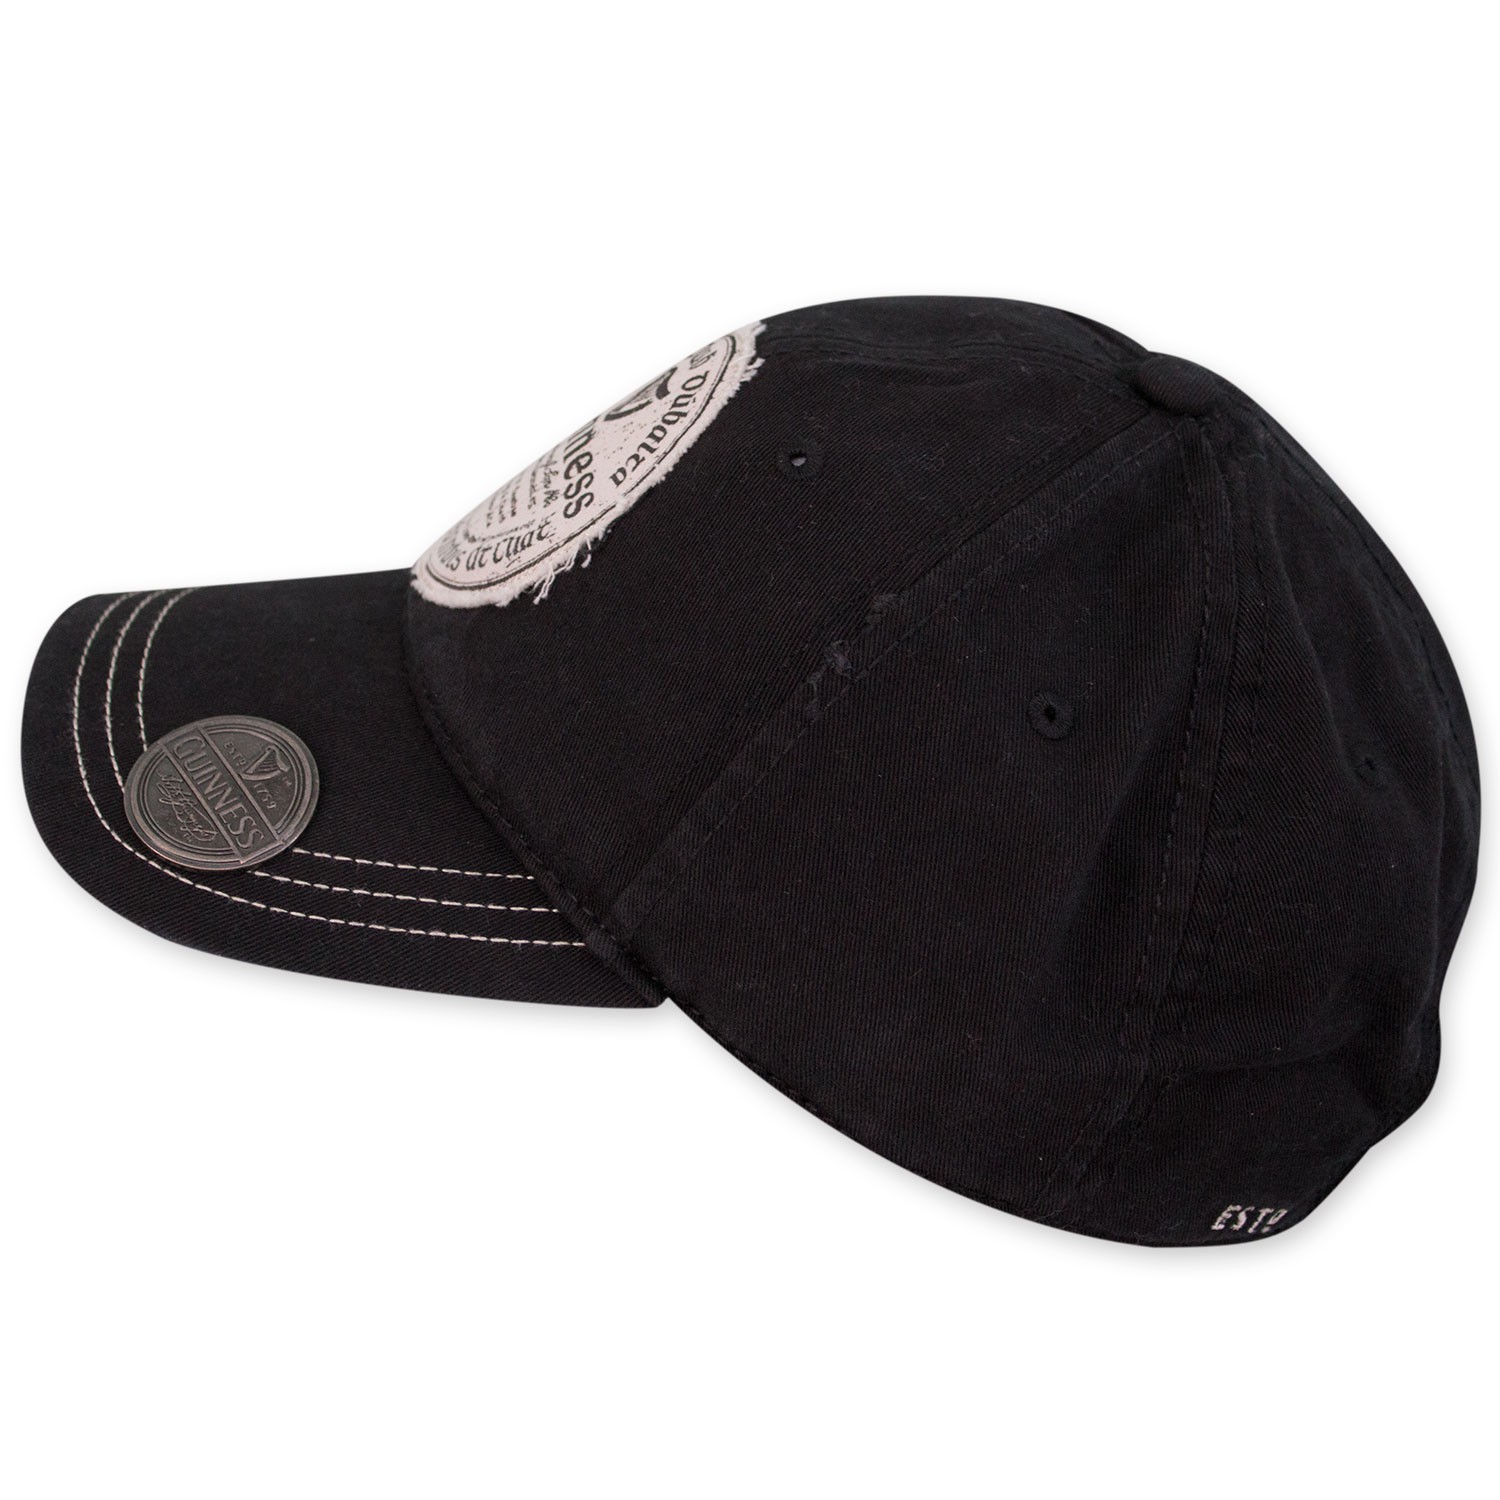 Guinness Gaelic Label Black Bottle Opener Hat